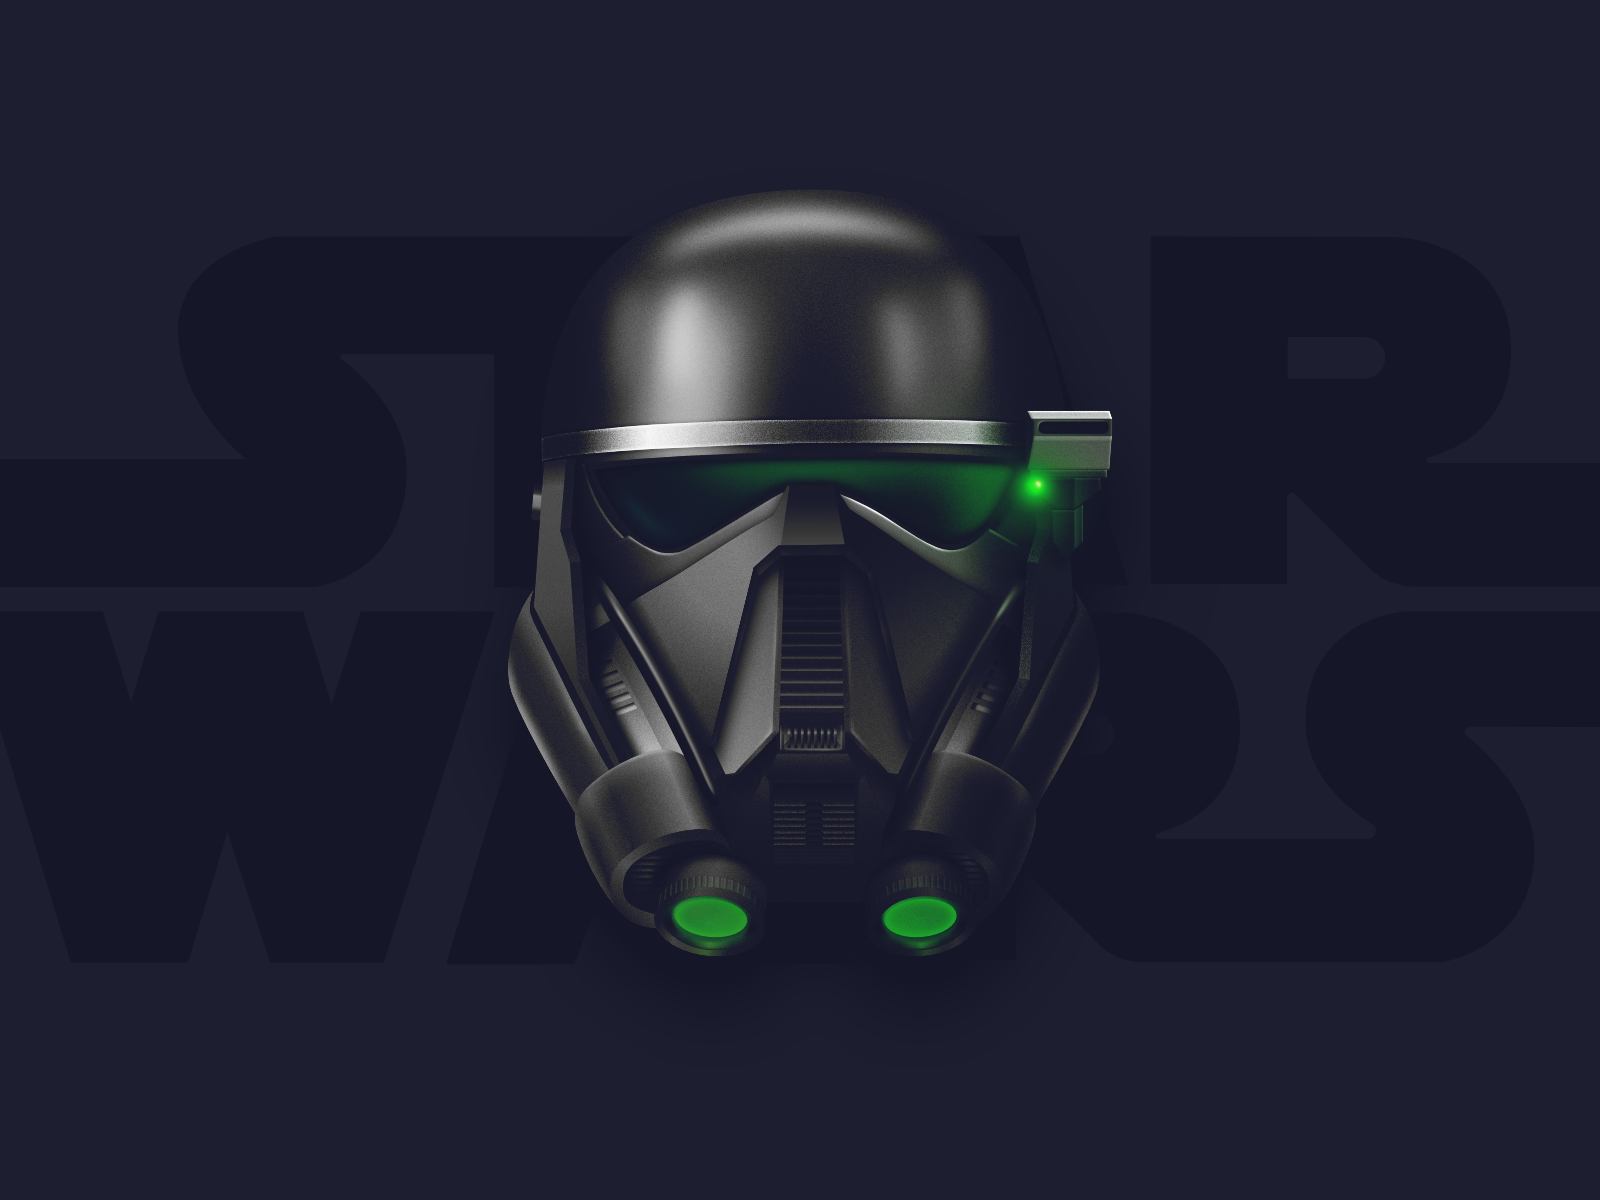 Star wars Darth vader and death trooper 4K wallpaper download